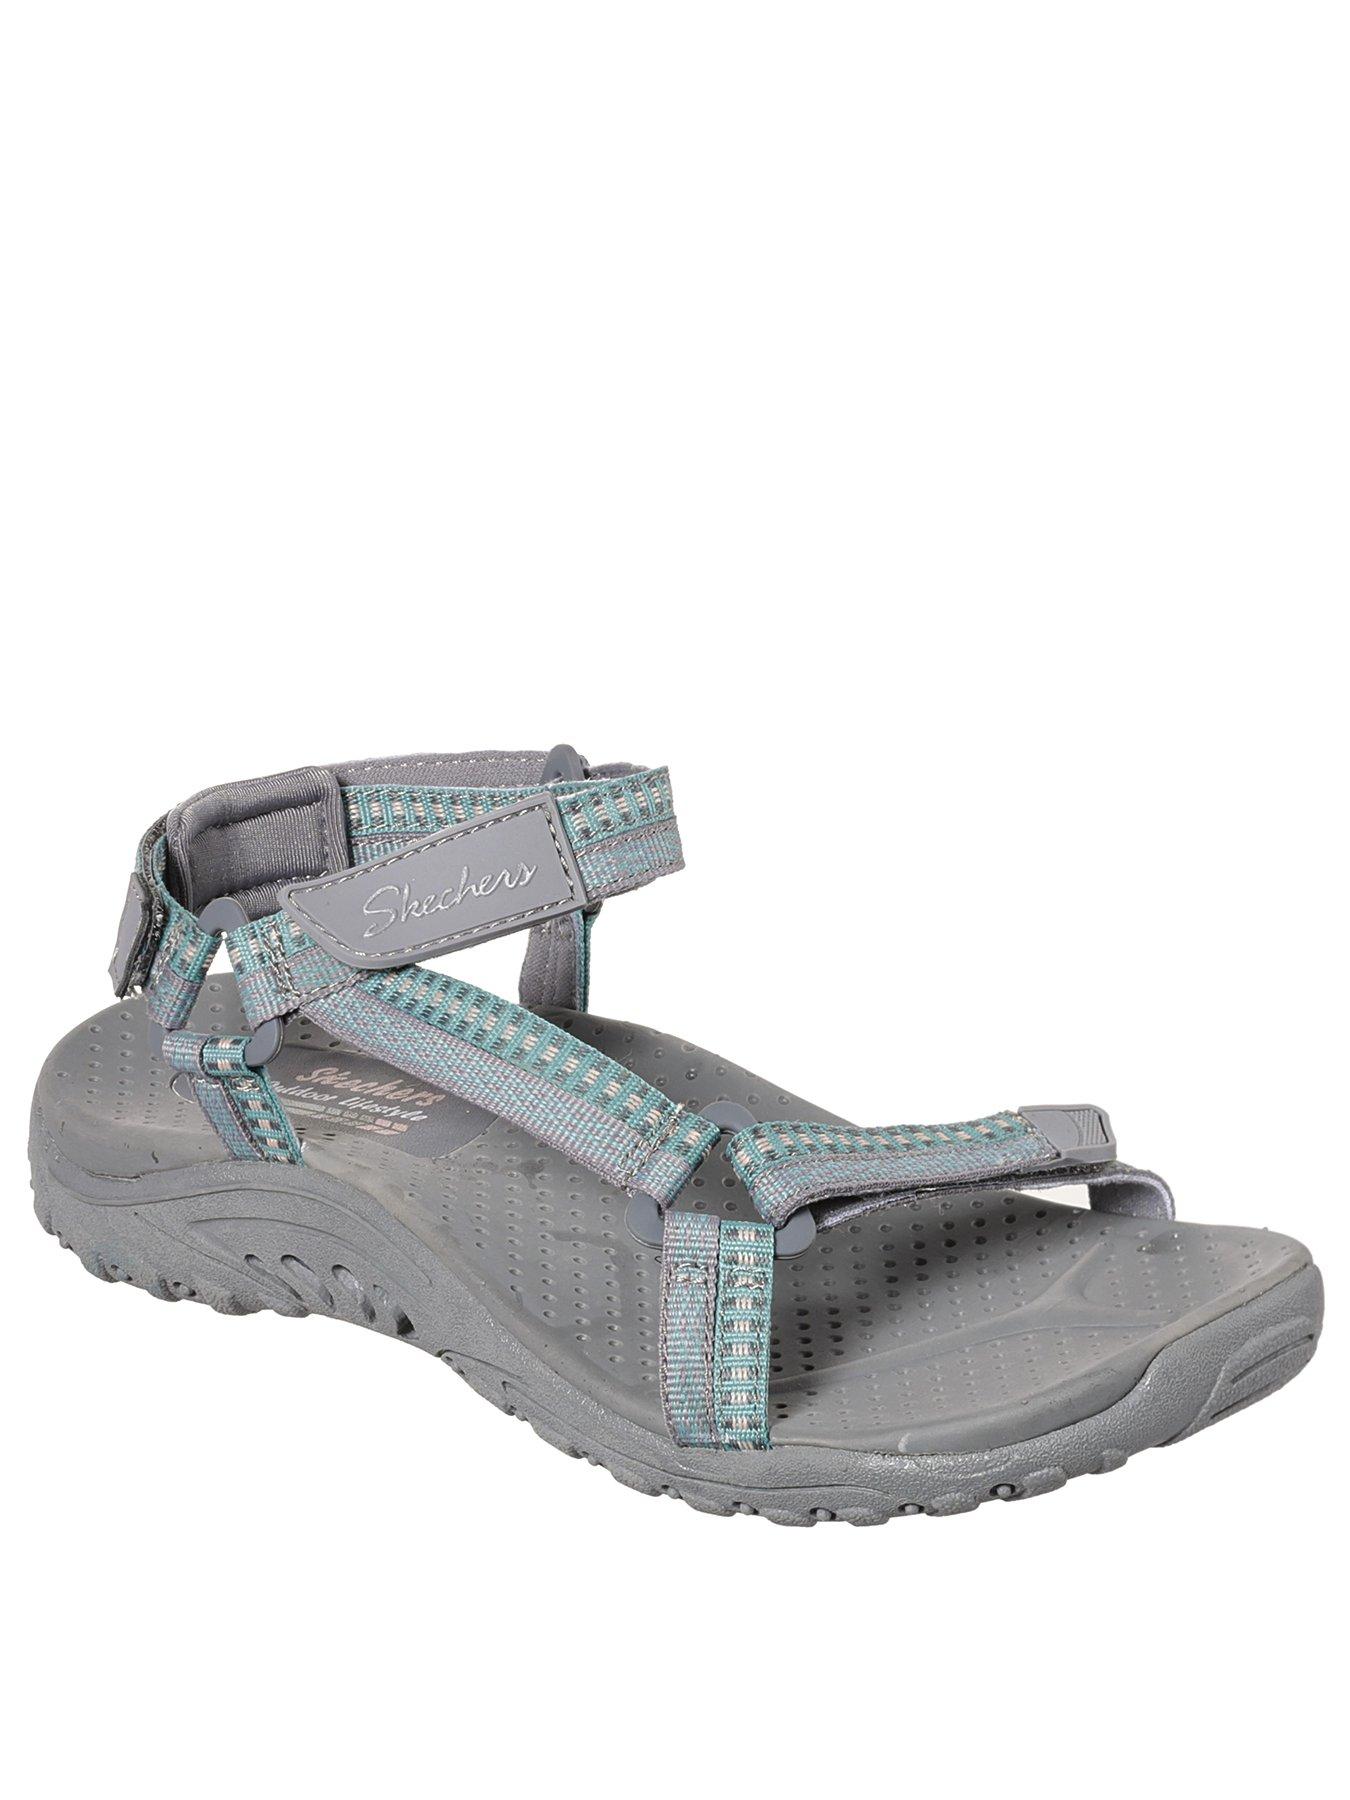 grey skechers sandals